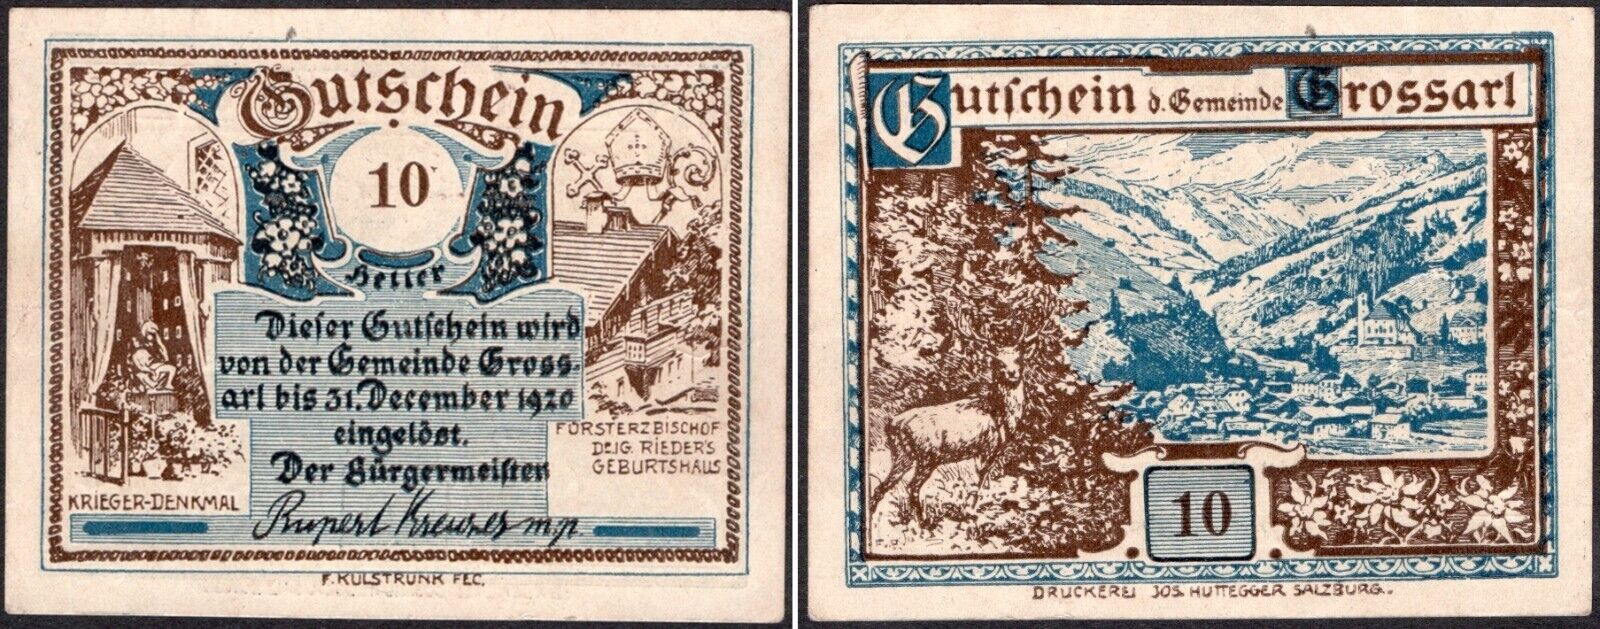 10 Heller 1920 - Austria Grossarl Notgeld Banknote -vf- #a22/8